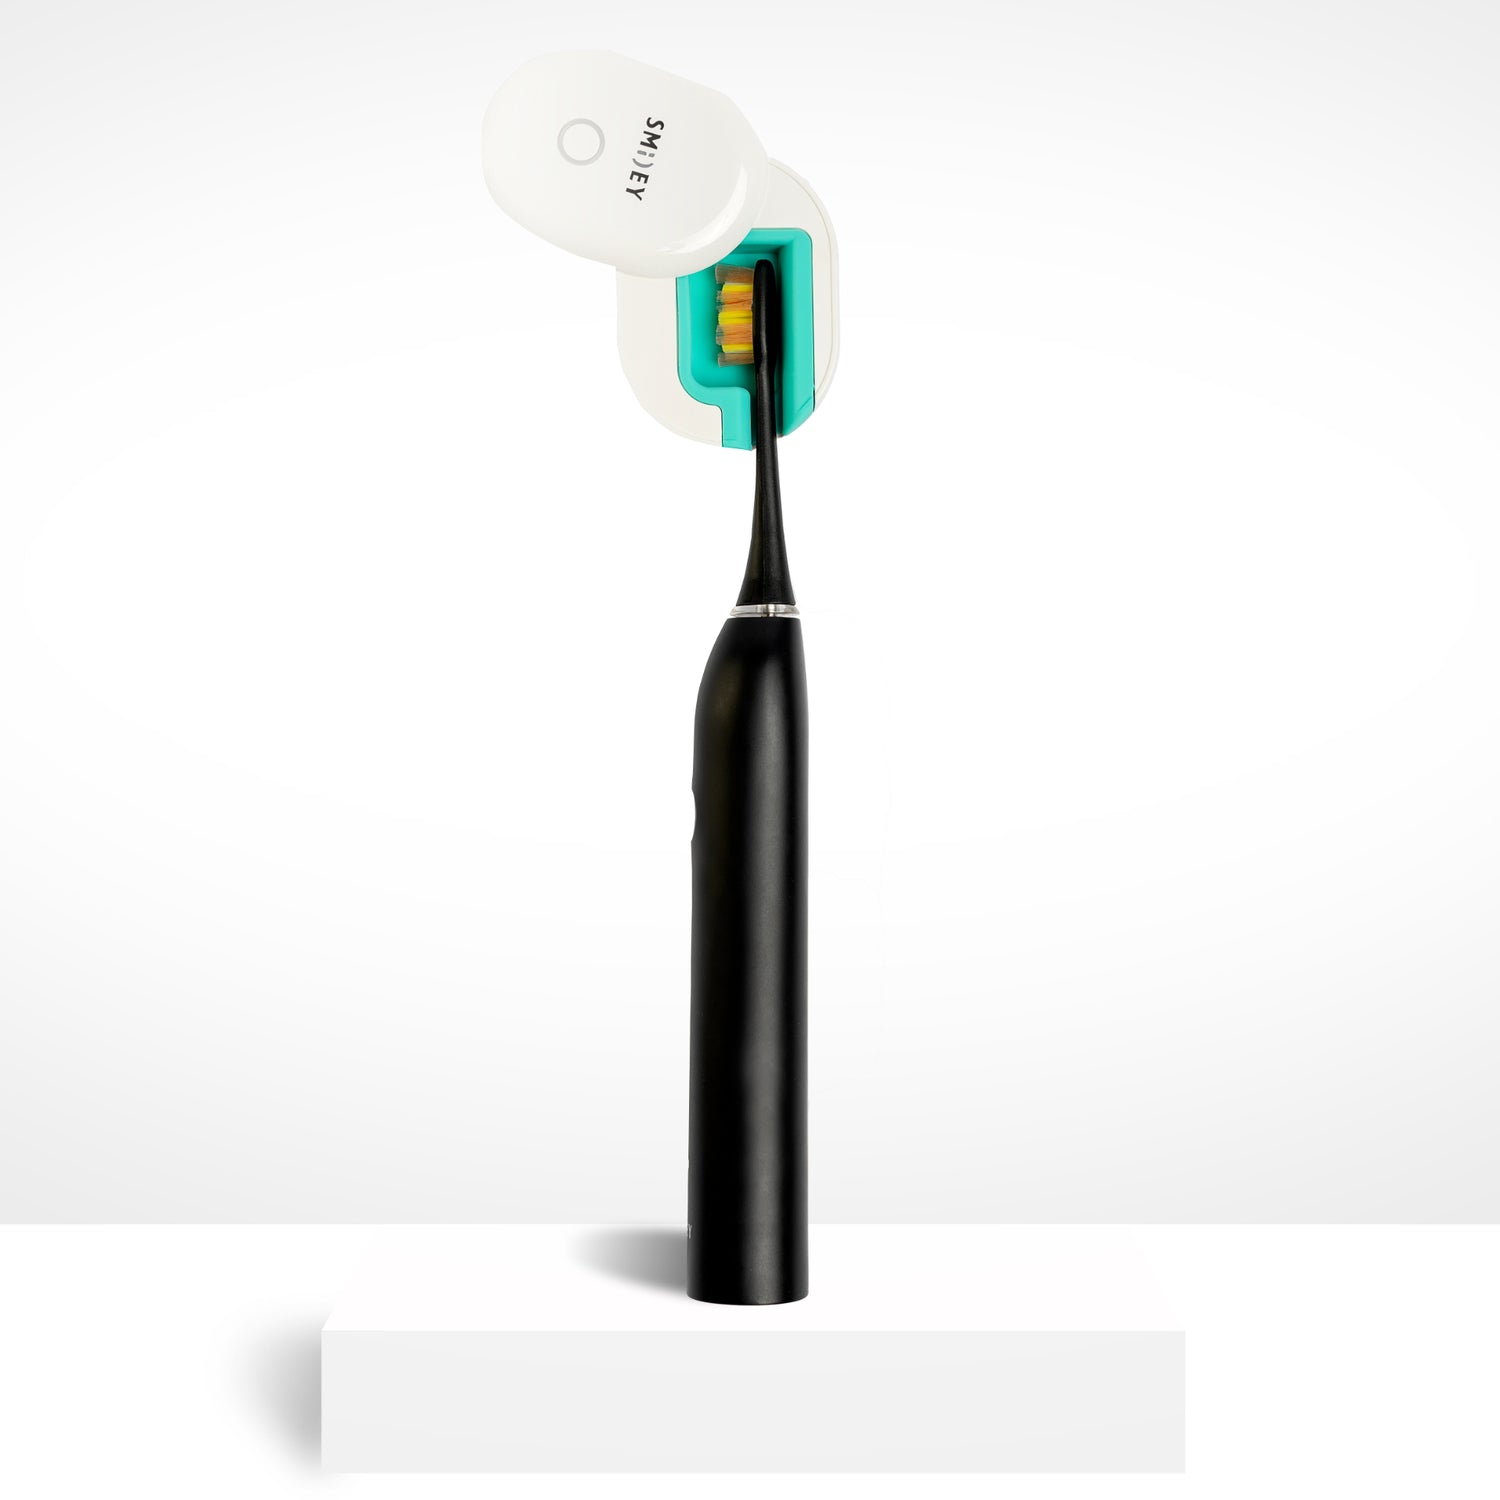 Электрическая зубная щетка Smiley Pro Black купить электро зубную щетку купить электрическую зубную щетку купить зубную электрощетку купить зубную щетку электрическую купить електричну зубну щітку купити зубну щітку електричну